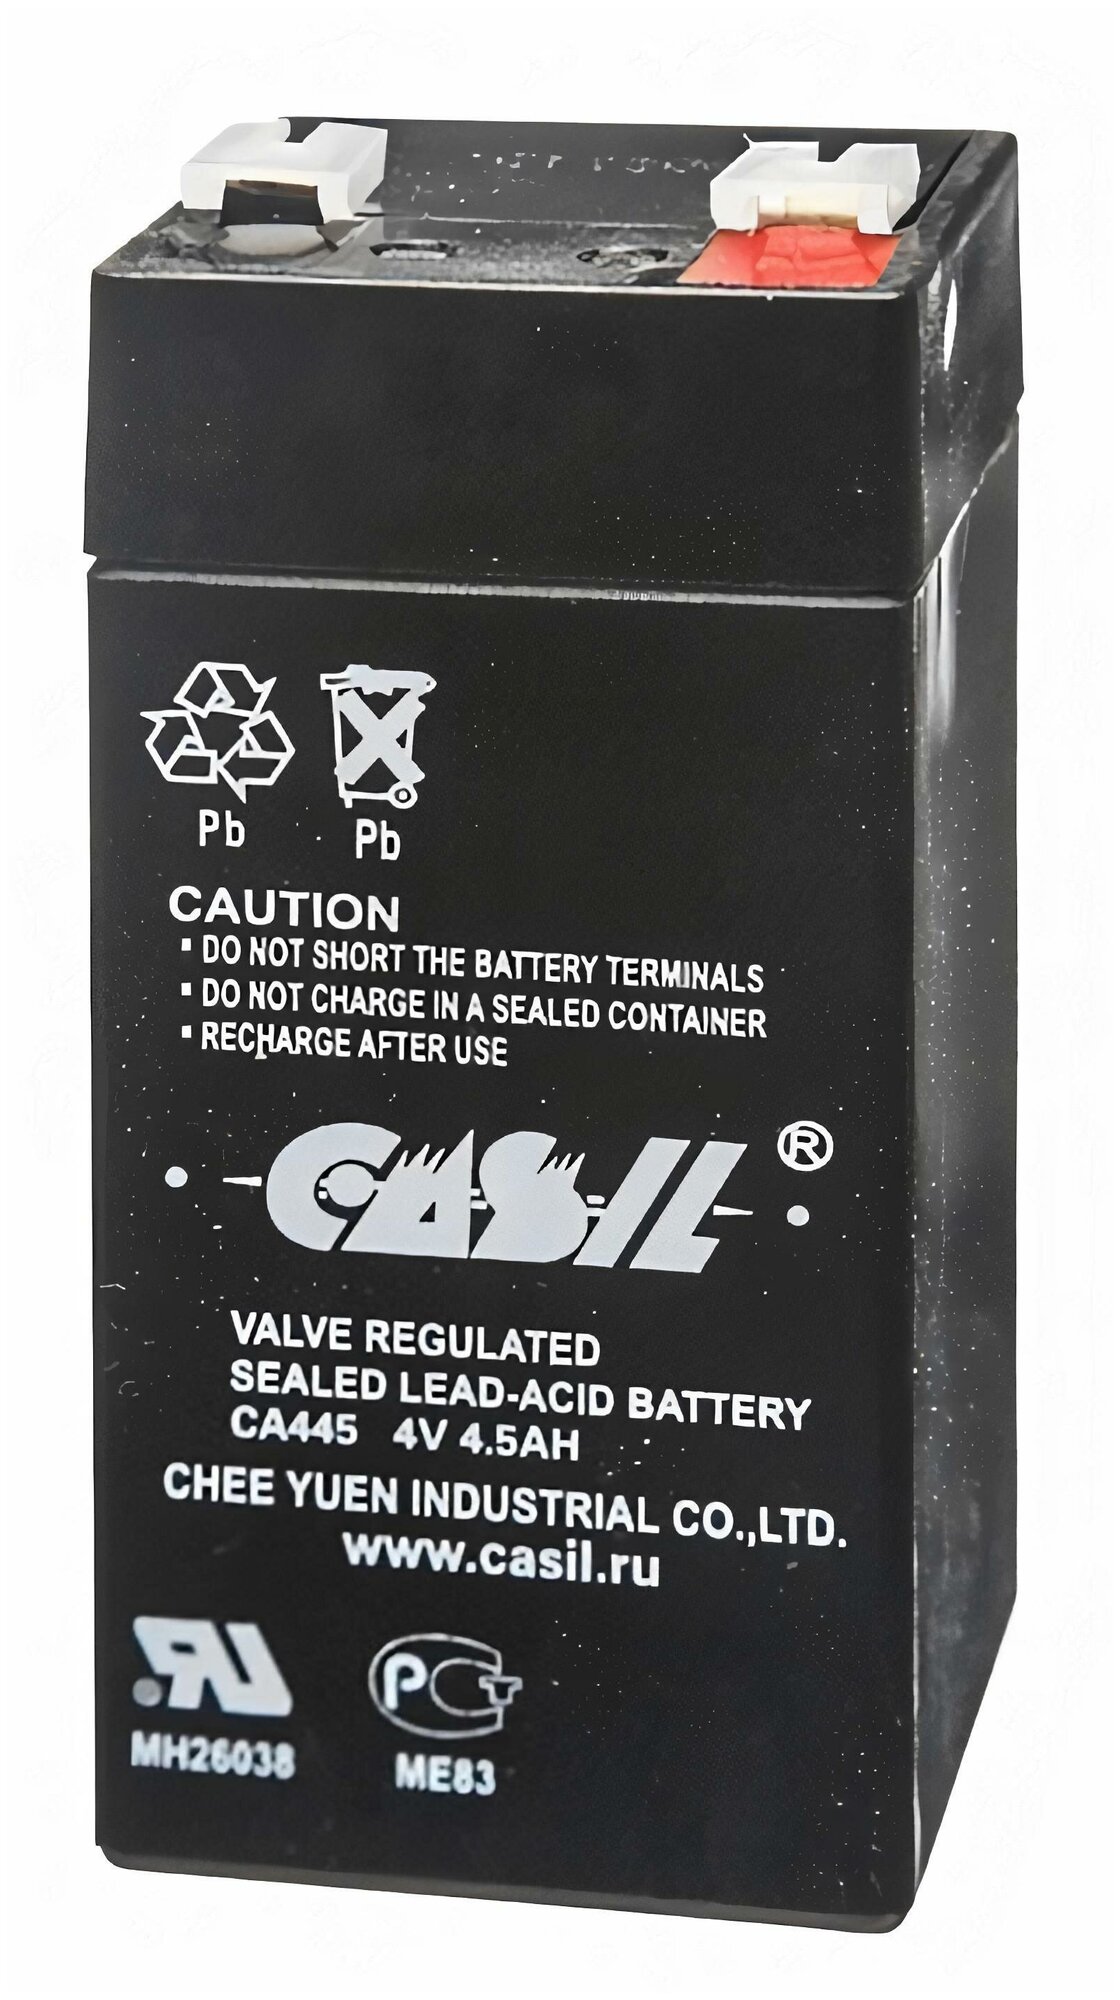 Свинцово-кислотный аккумулятор CASIL CA445 (4В 4.5Ач /4V 4.5AH) для фонарей/ИБП/аварийного освещения контрольно кассовых терминалов весов GPS оборудования для электрических скутеров и т. д.